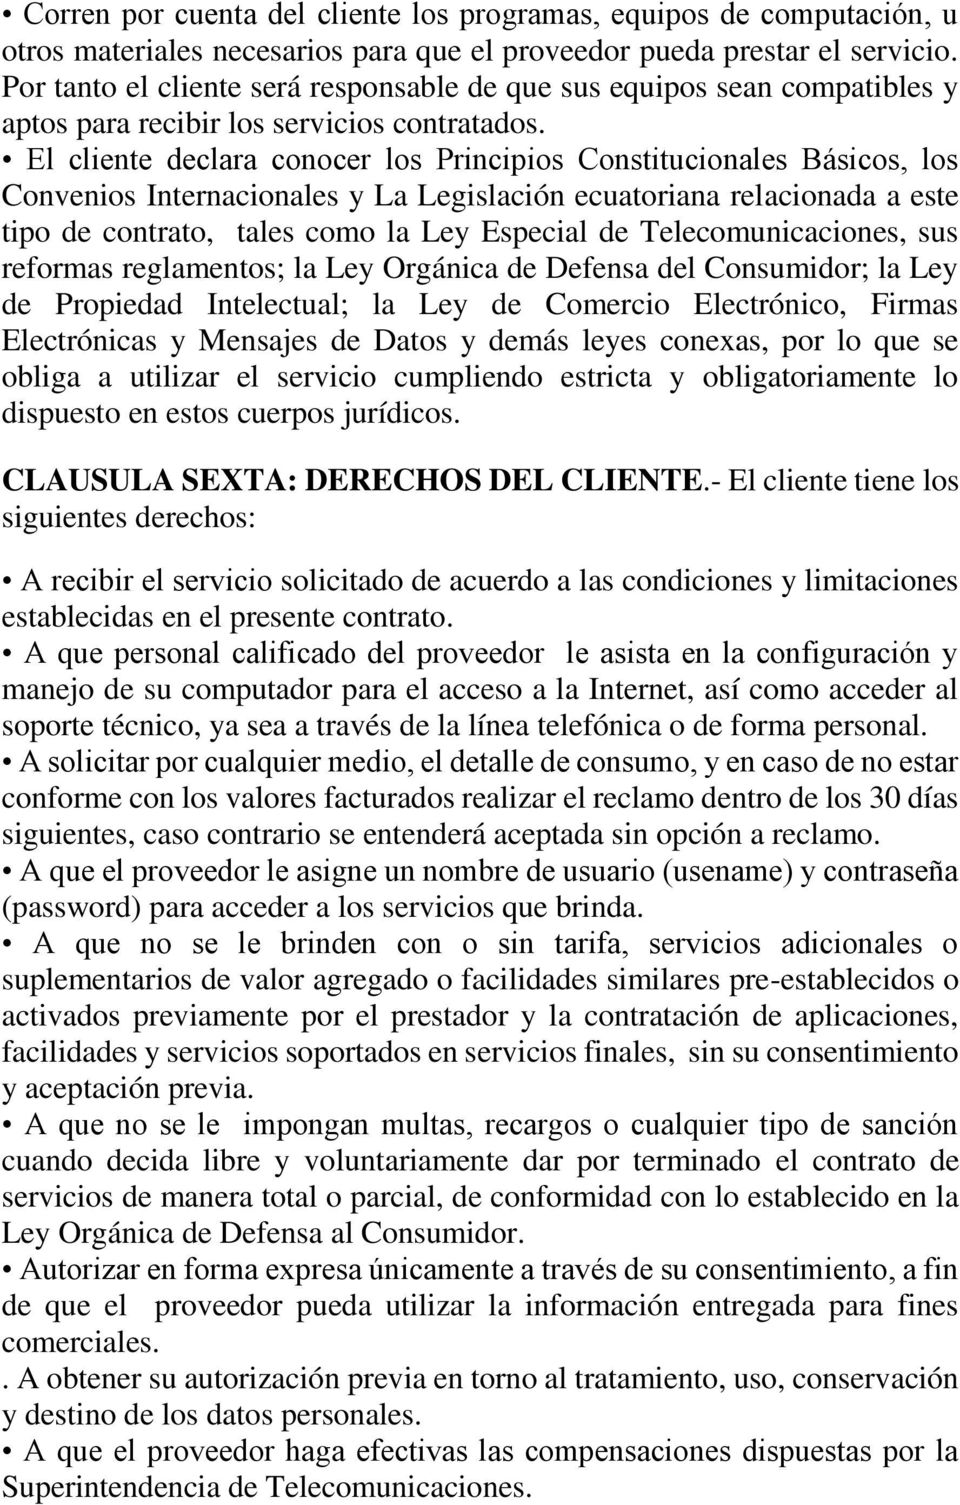 El cliente declara conocer los Principios Constitucionales Básicos, los Convenios Internacionales y La Legislación ecuatoriana relacionada a este tipo de contrato, tales como la Ley Especial de